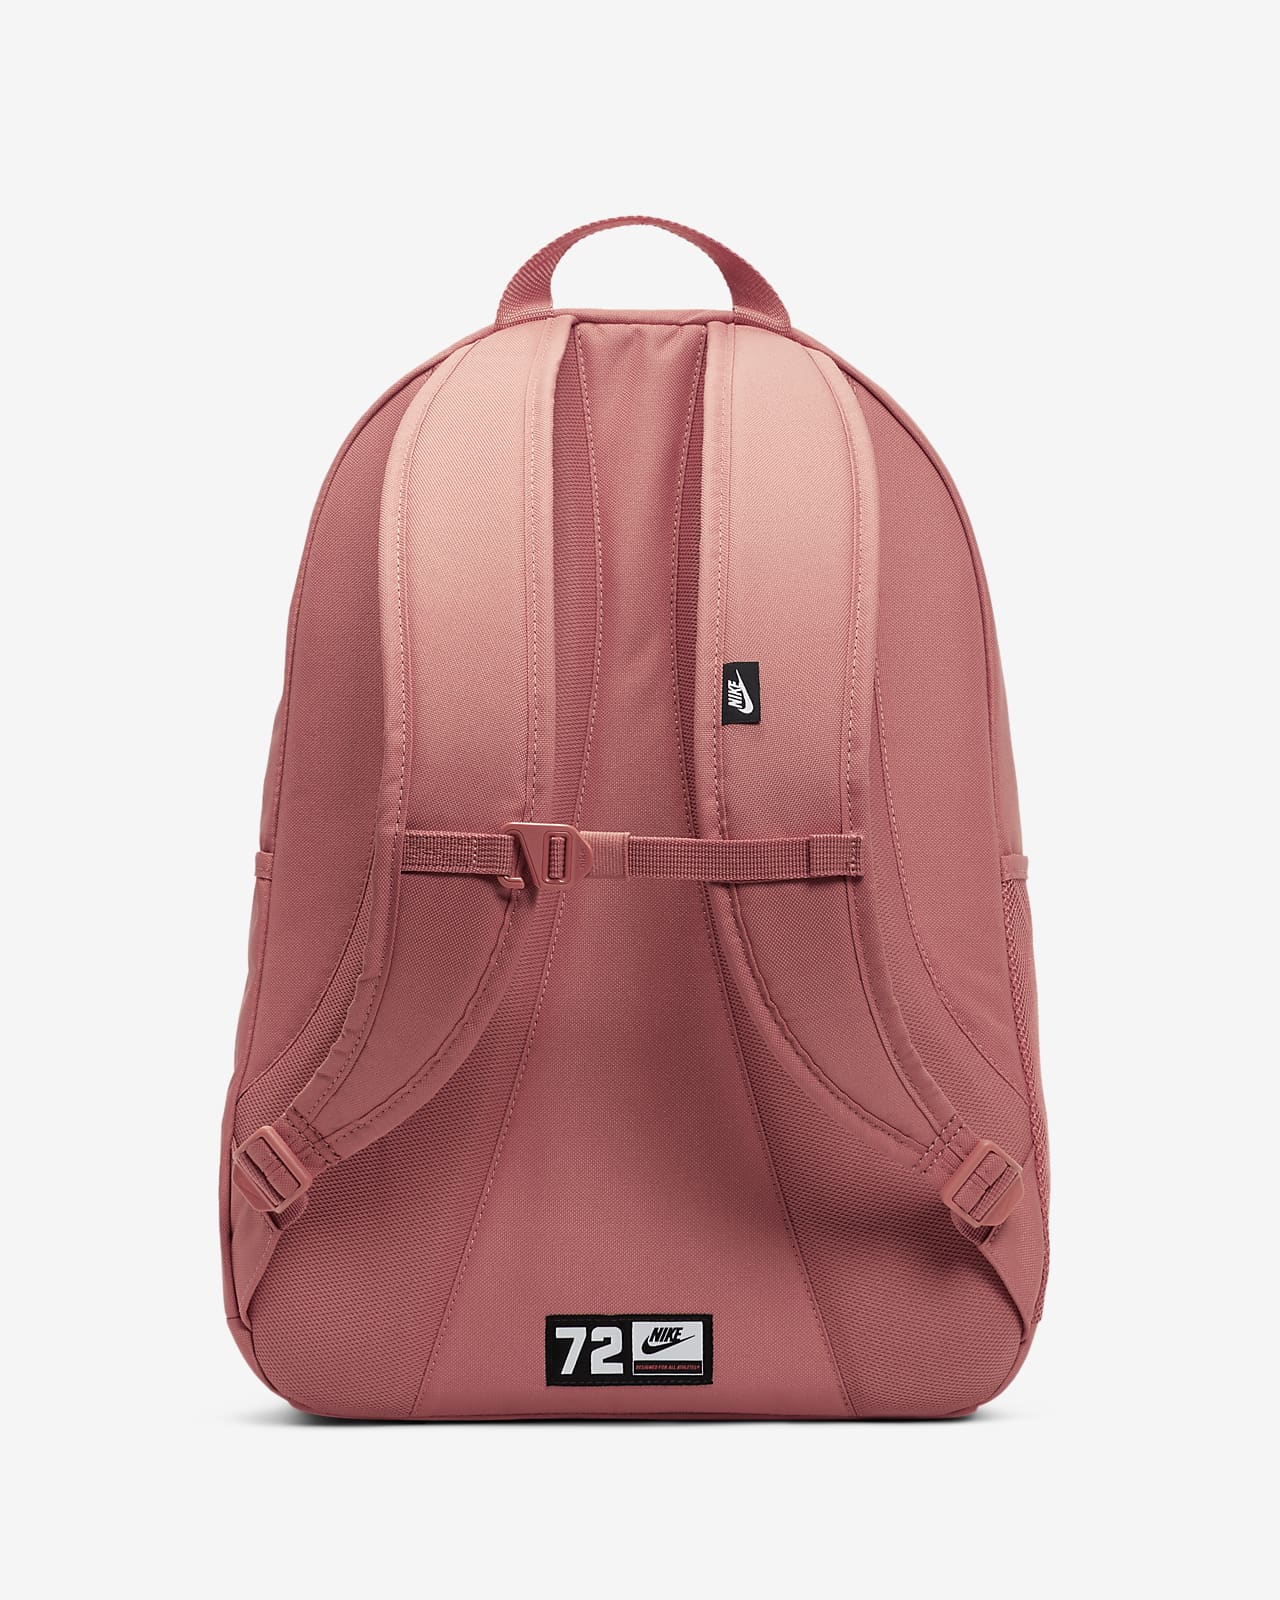 nike hayward 2.0 backpack pink